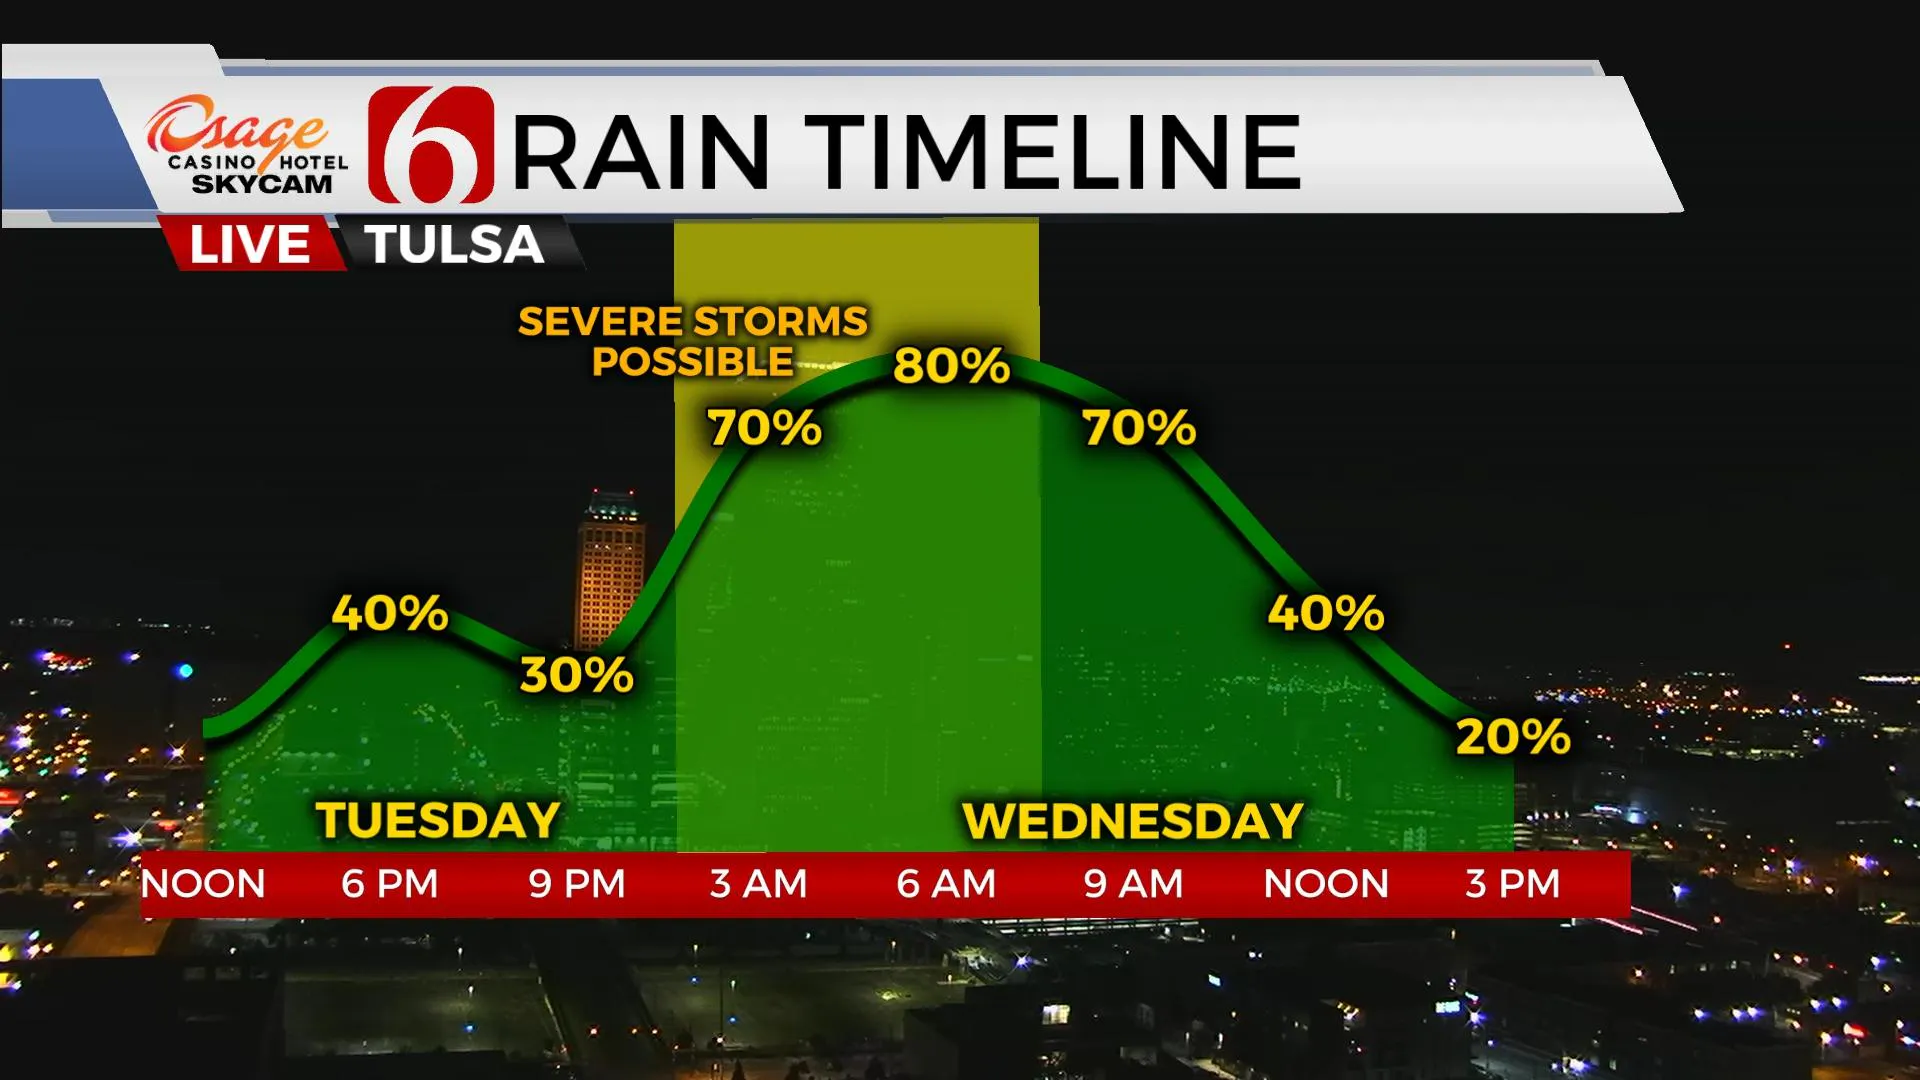 Tuesday Rain Timeline 